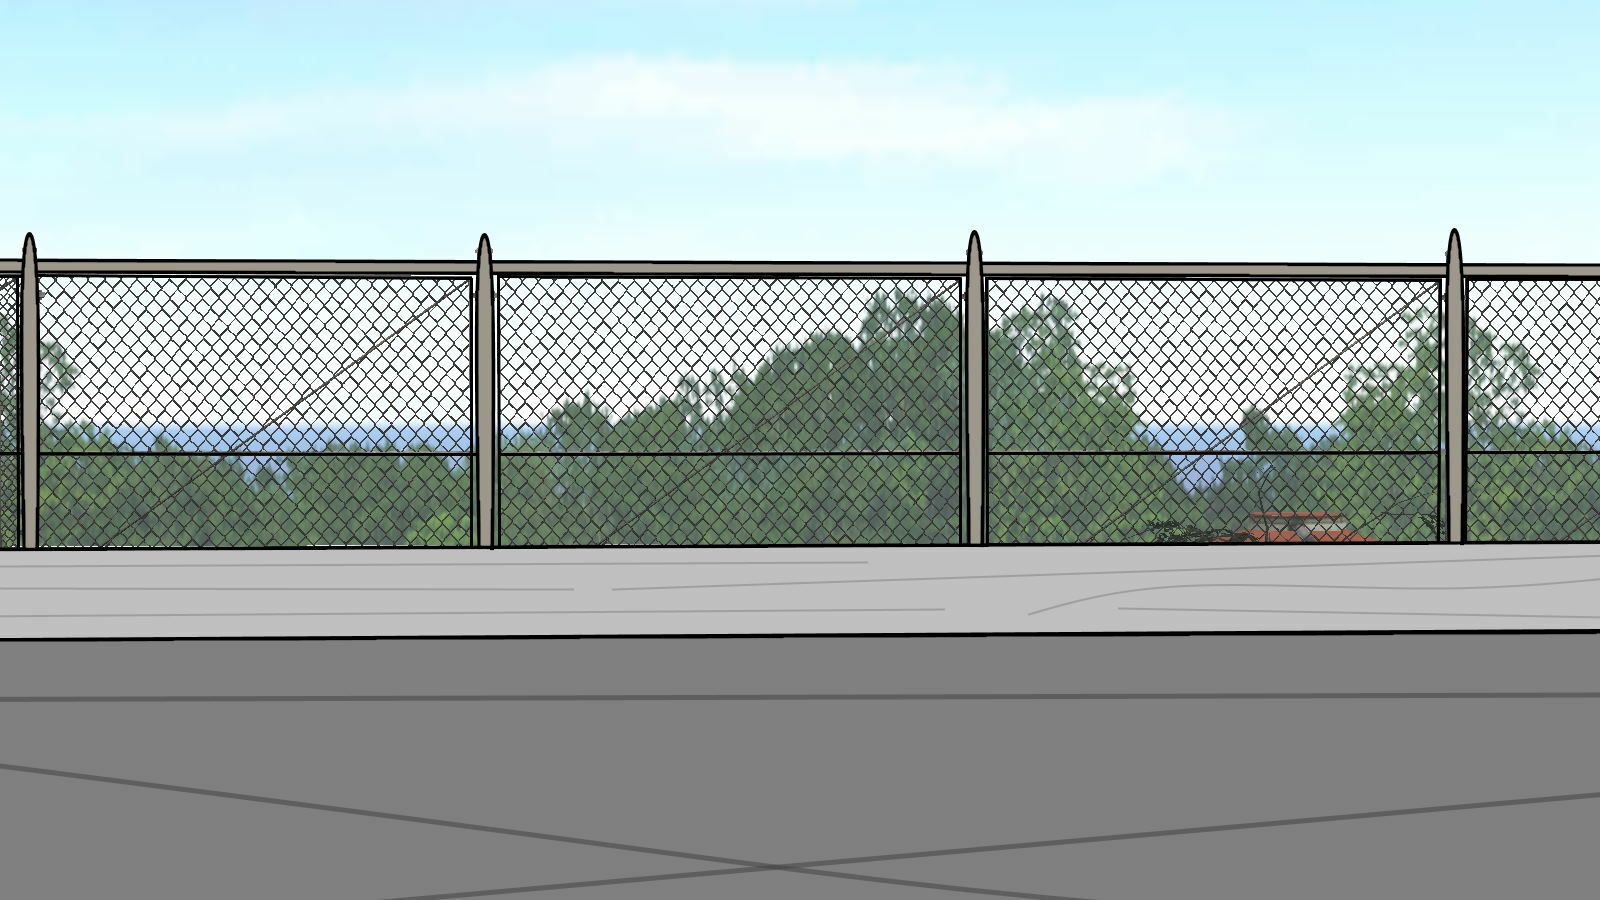 School Rooftop Scenery 1 by ColtRockGreen on Newgrounds